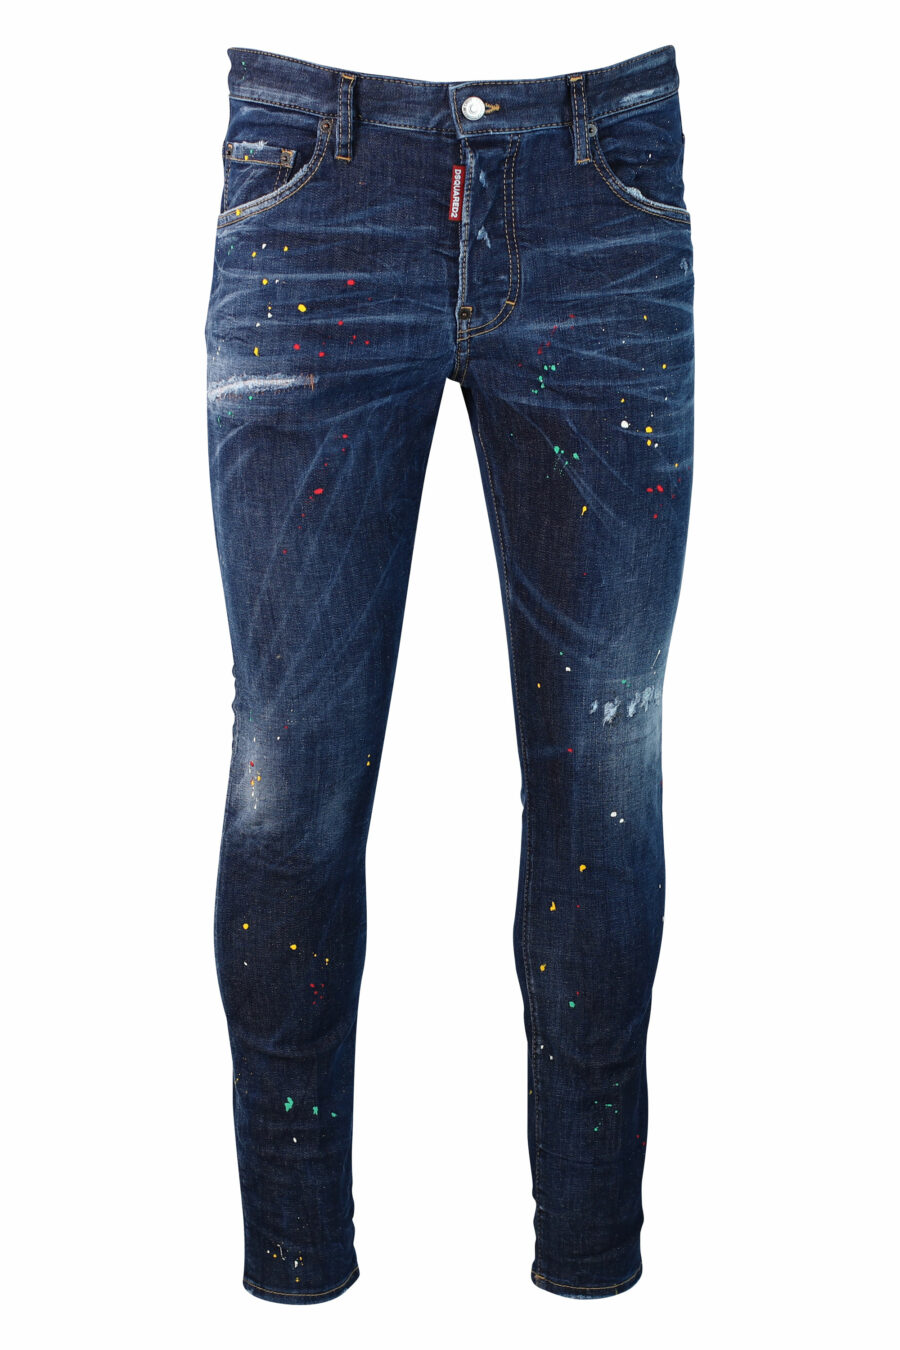 Pantalón vaquero azul "skater jean" semidesgastado "bob marley" - IMG 9918 1